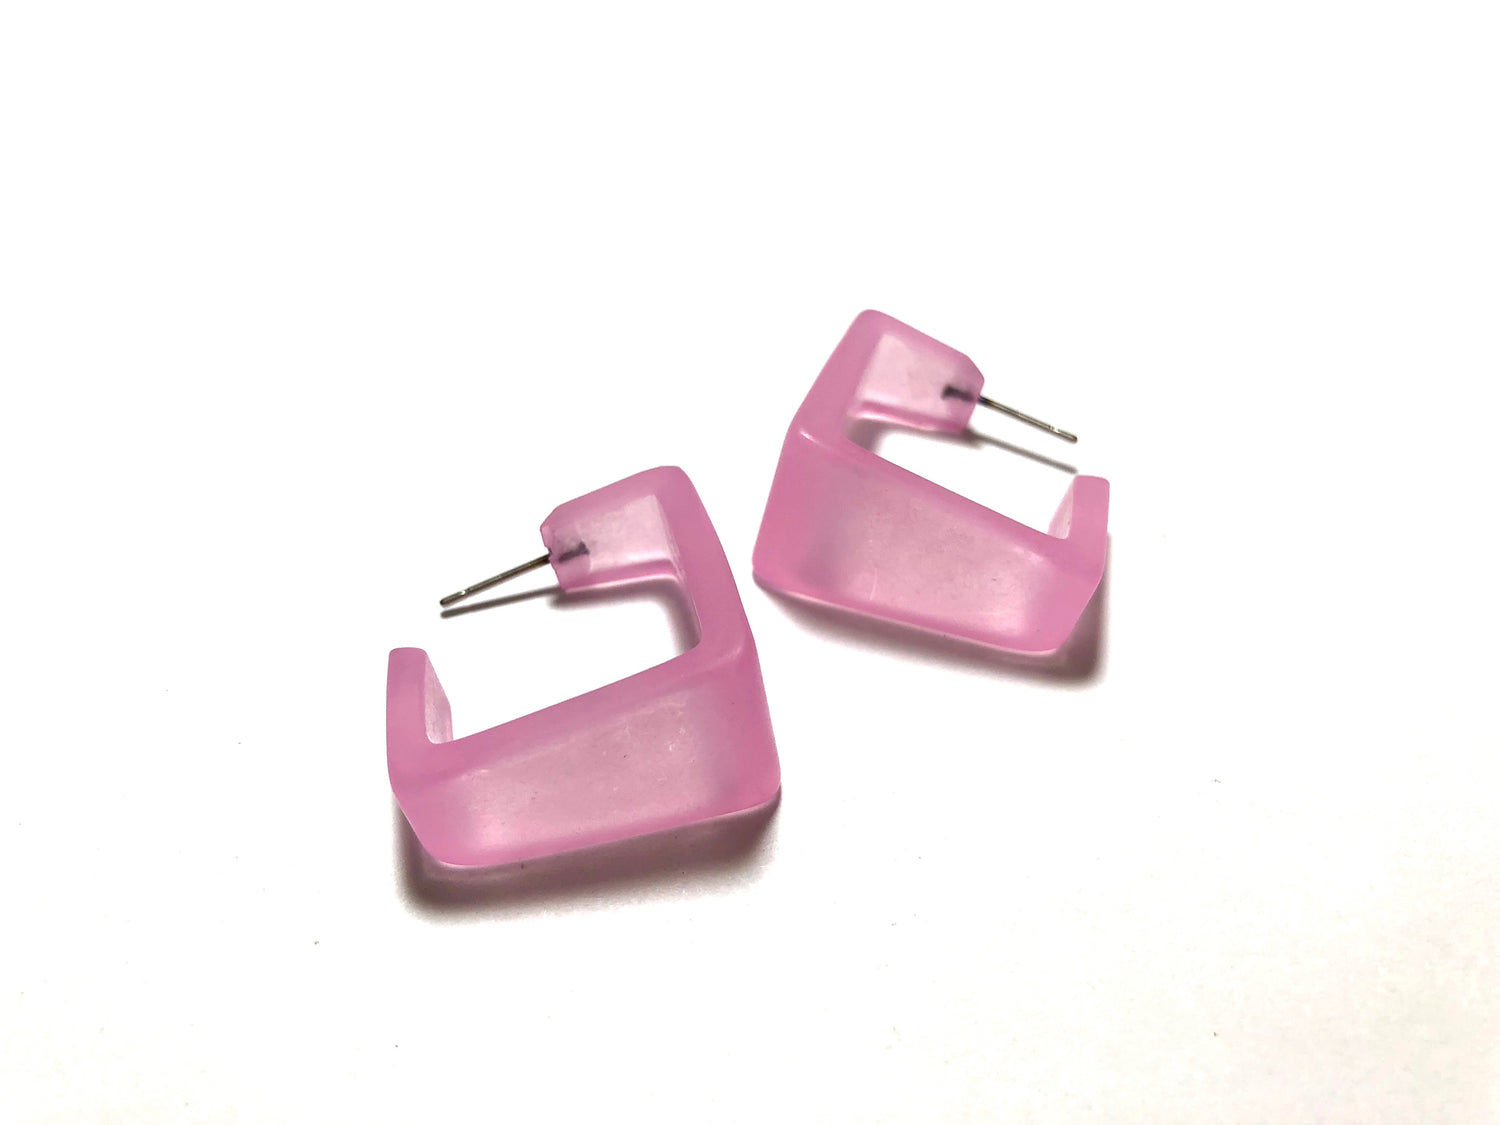 pink square hoop earrings